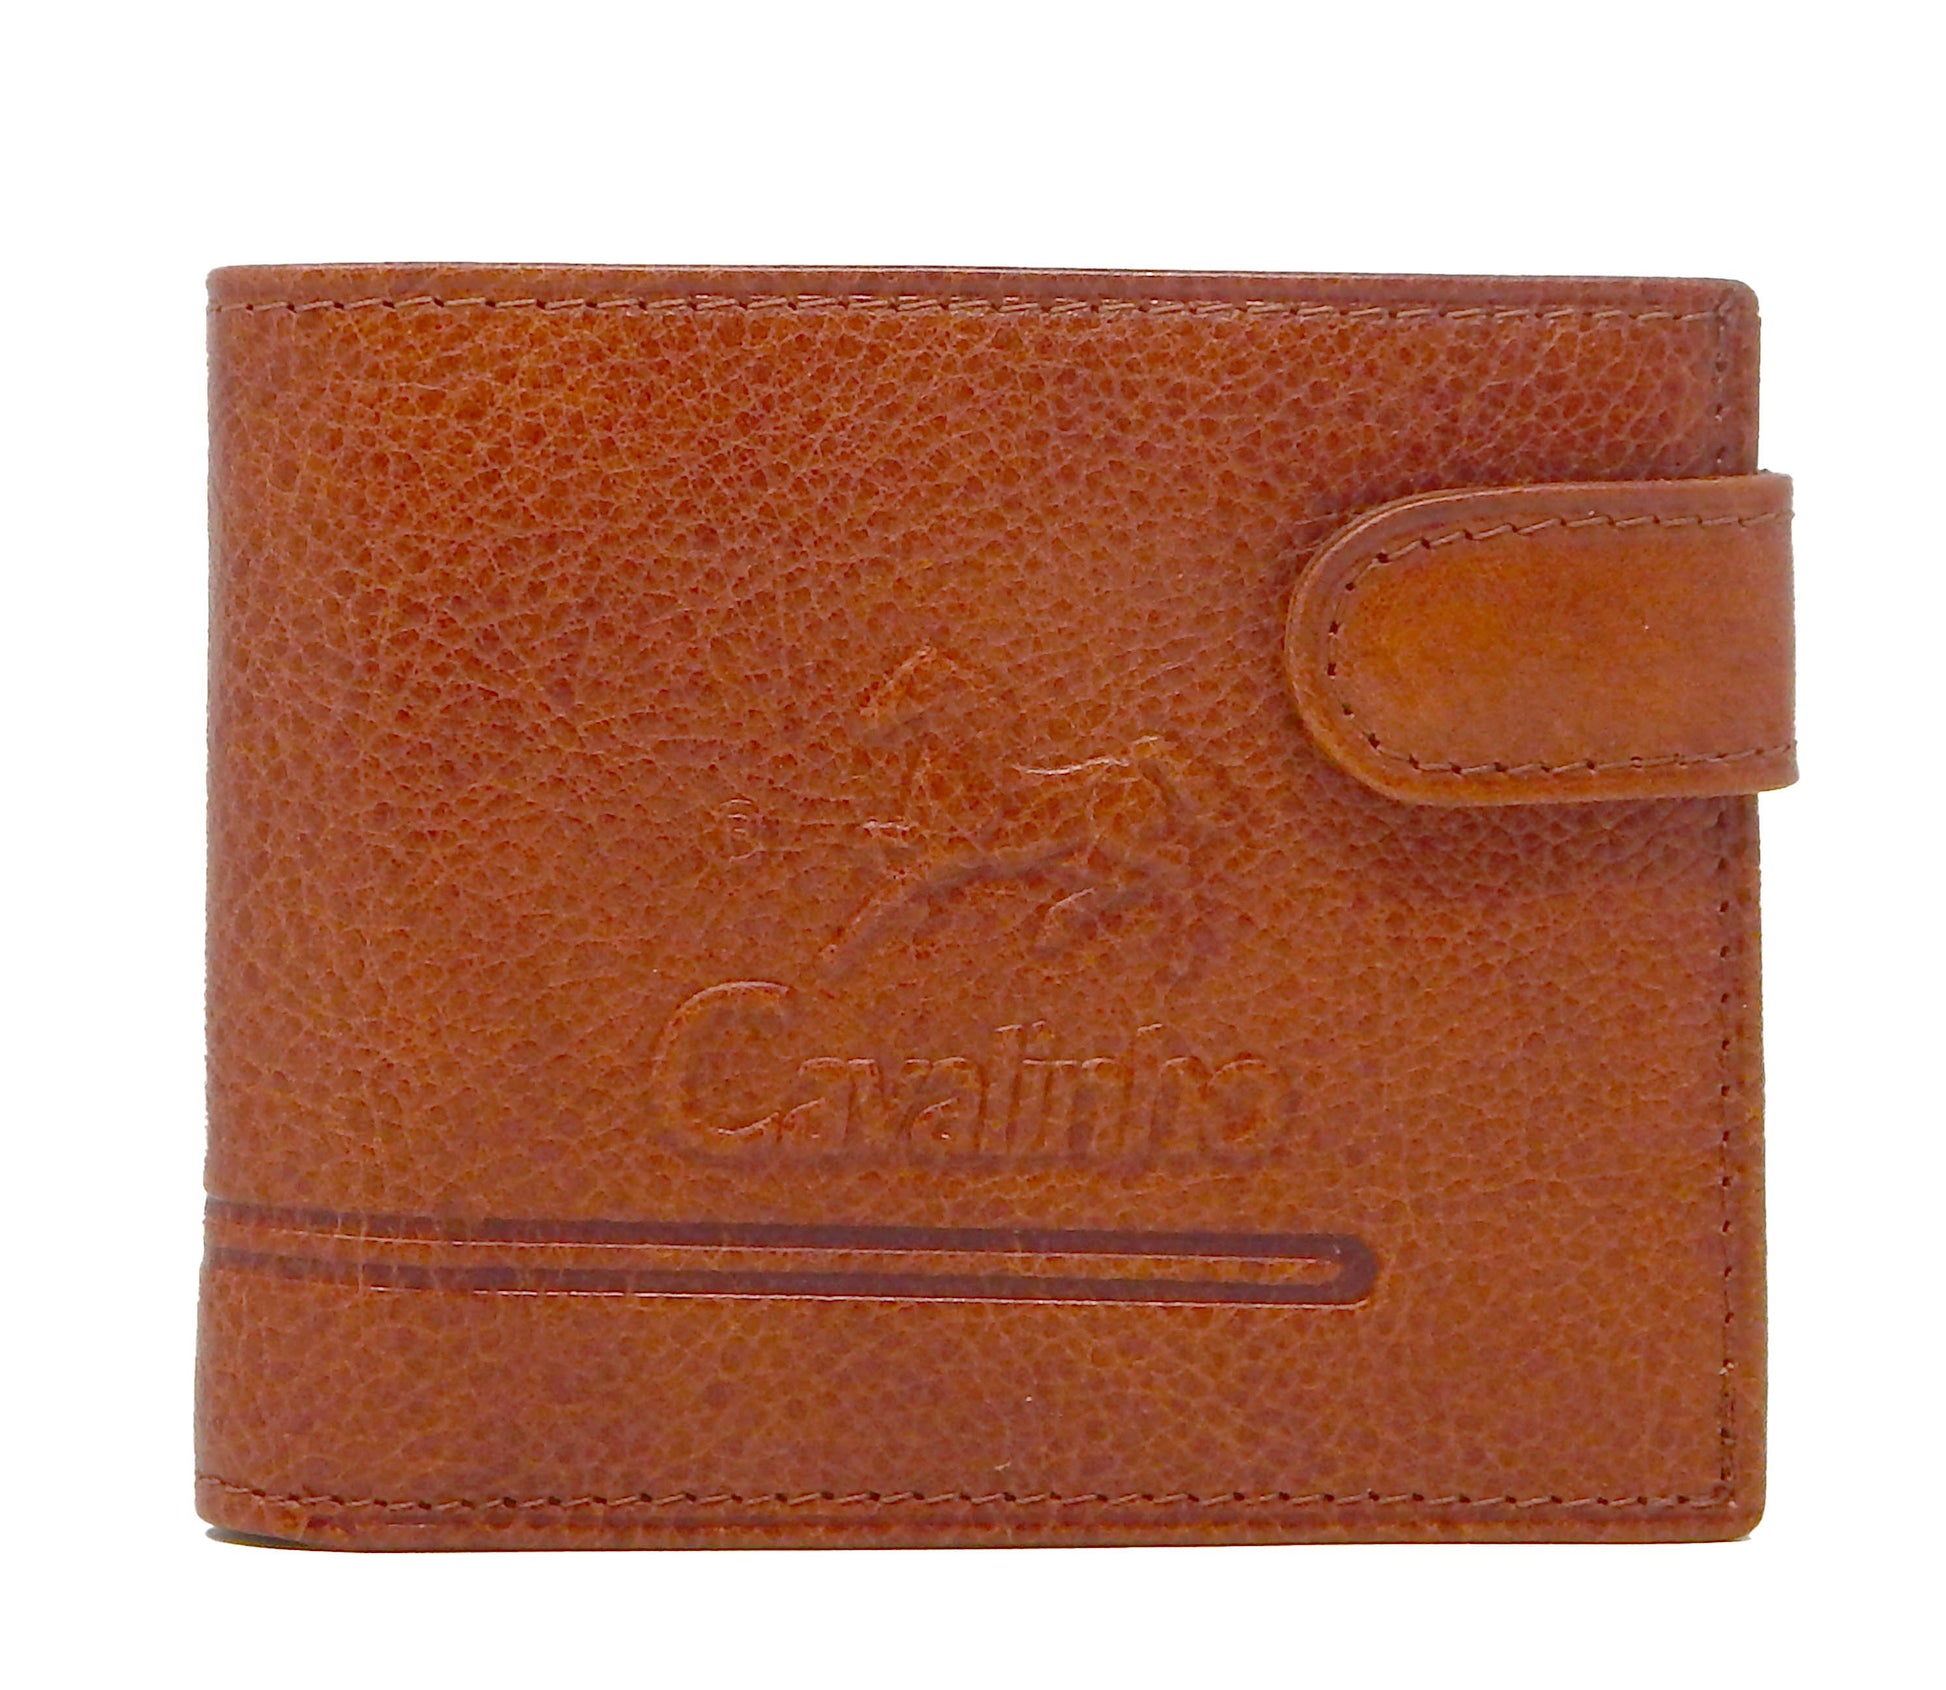 Cavalinho Men's Trifold Leather Wallet - SaddleBrown - 28610586.13.99_1